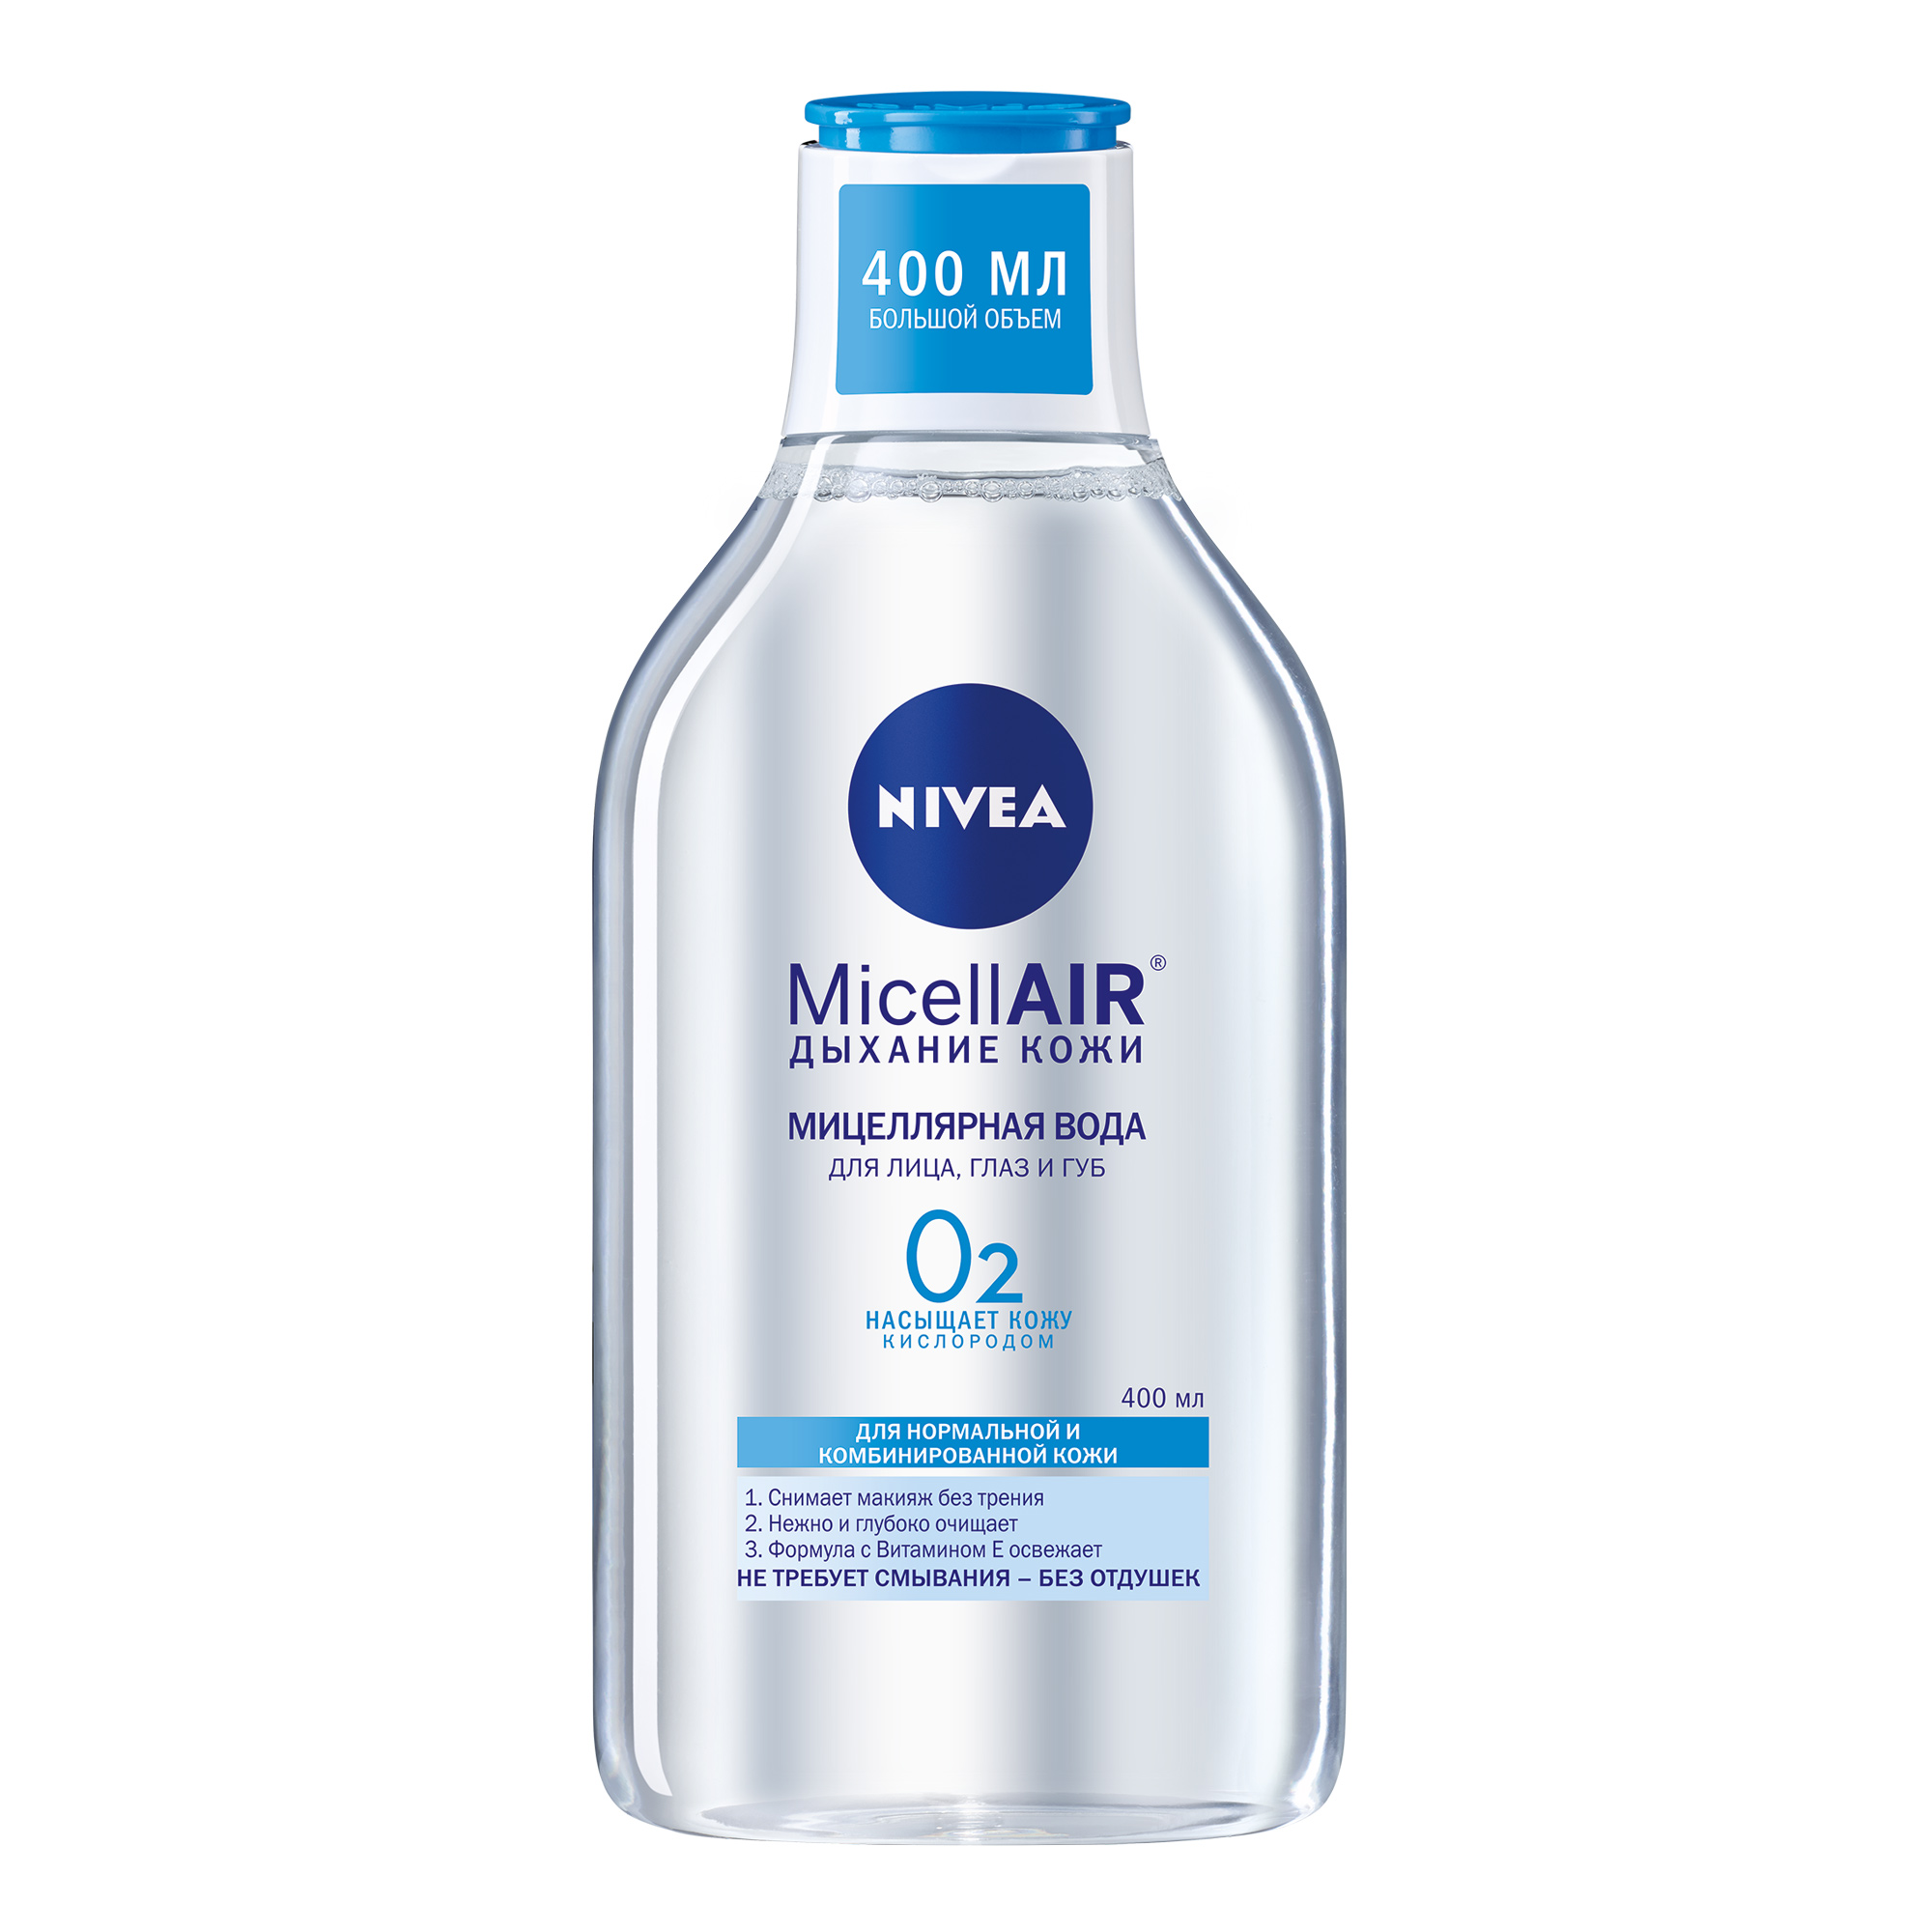 Мицеллярная вода Nivea MicellAIR Дыхание кожи для нормальной и комбинированной кожи 400 мл мицеллярная эмульсия для снятия макияжа 250 мл